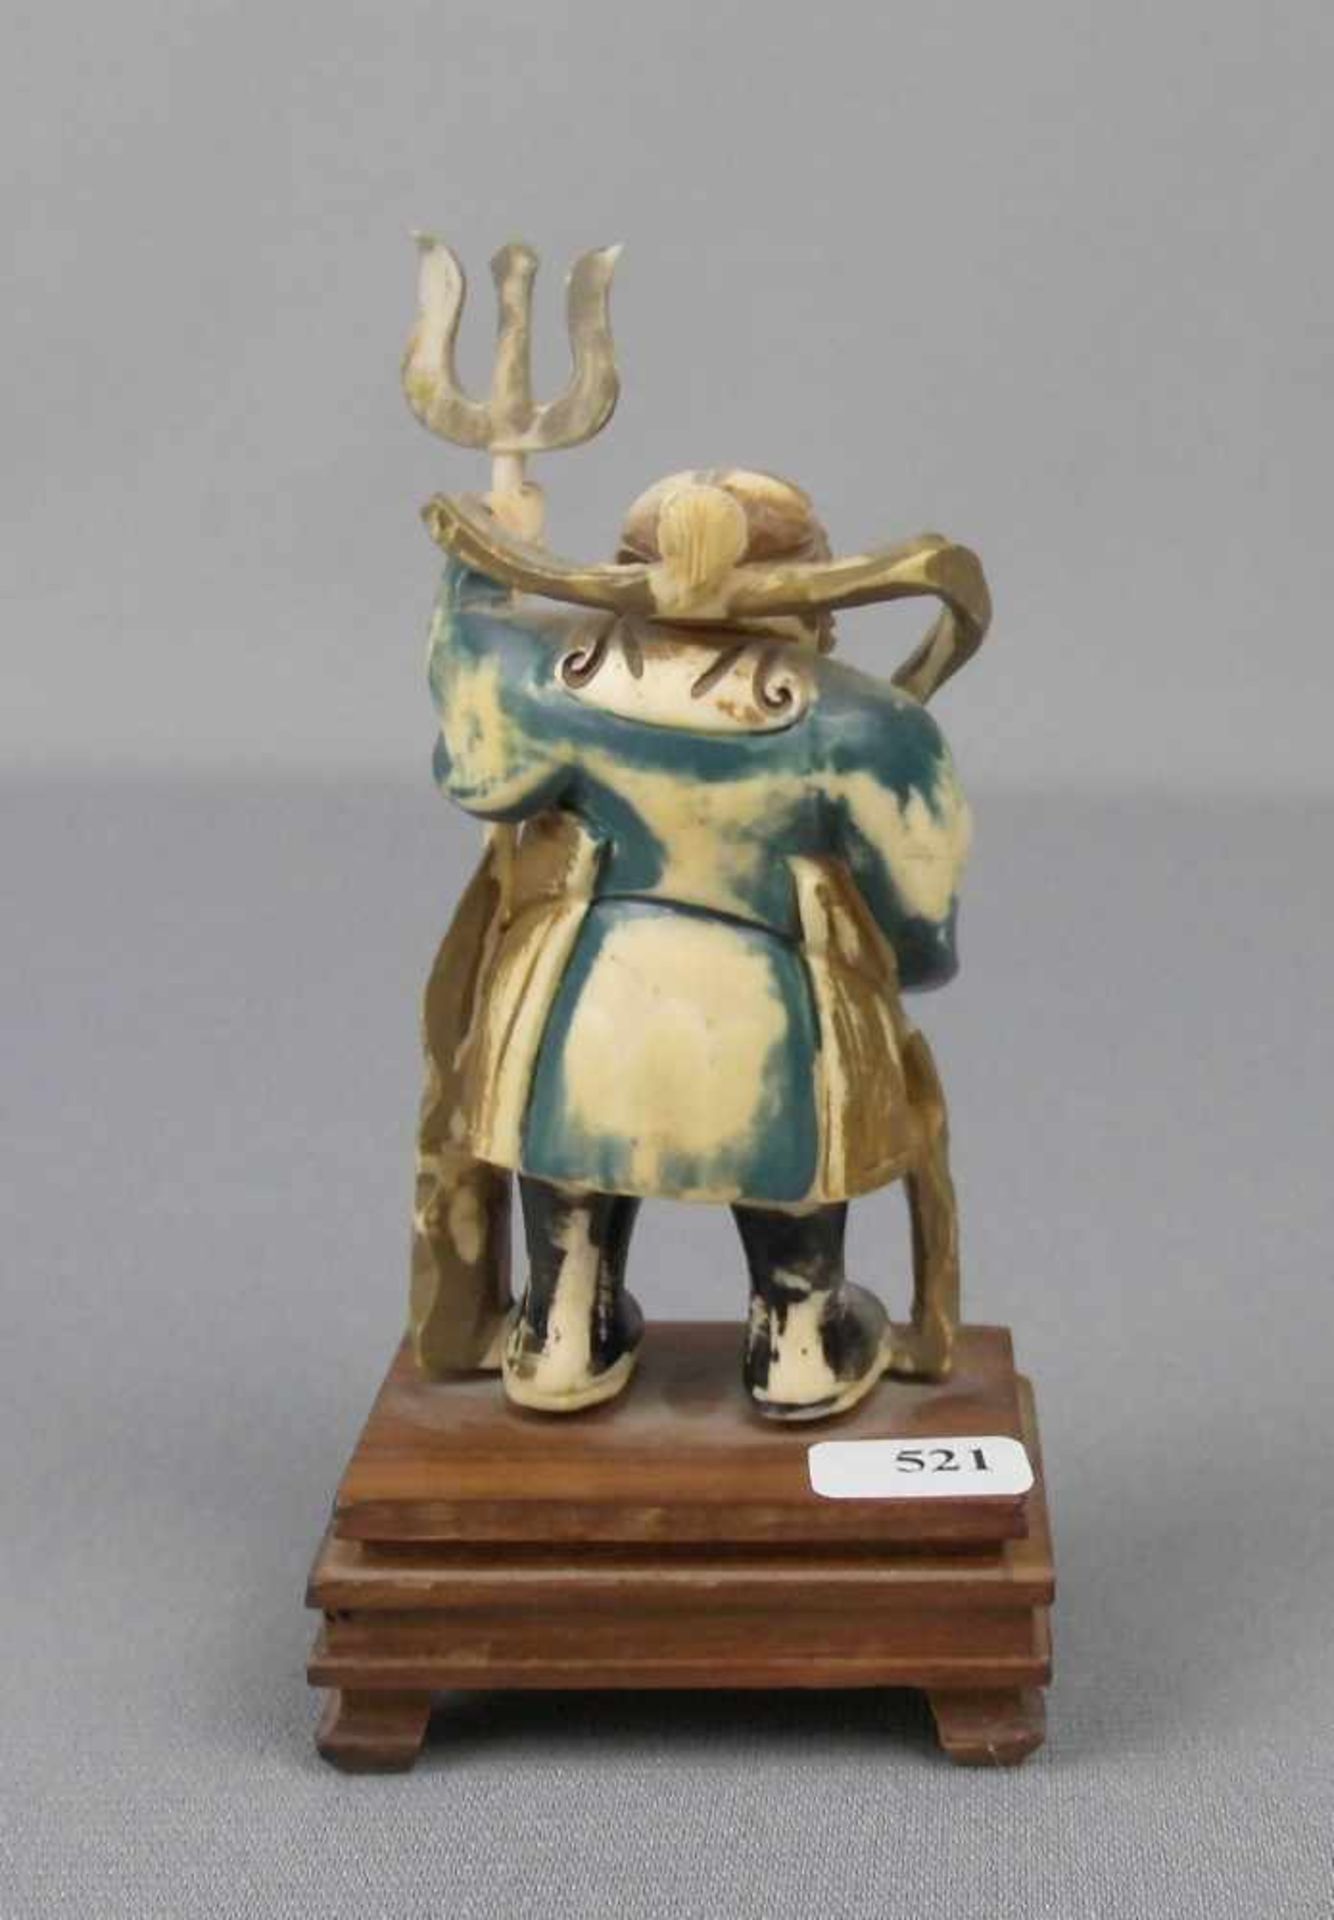 4 OKIMONO / ELFENBEINFIGUREN, Japan, Meiji-Periode, 19./20. Jh., Elfenbein und Holz, polychrom - Bild 3 aus 5